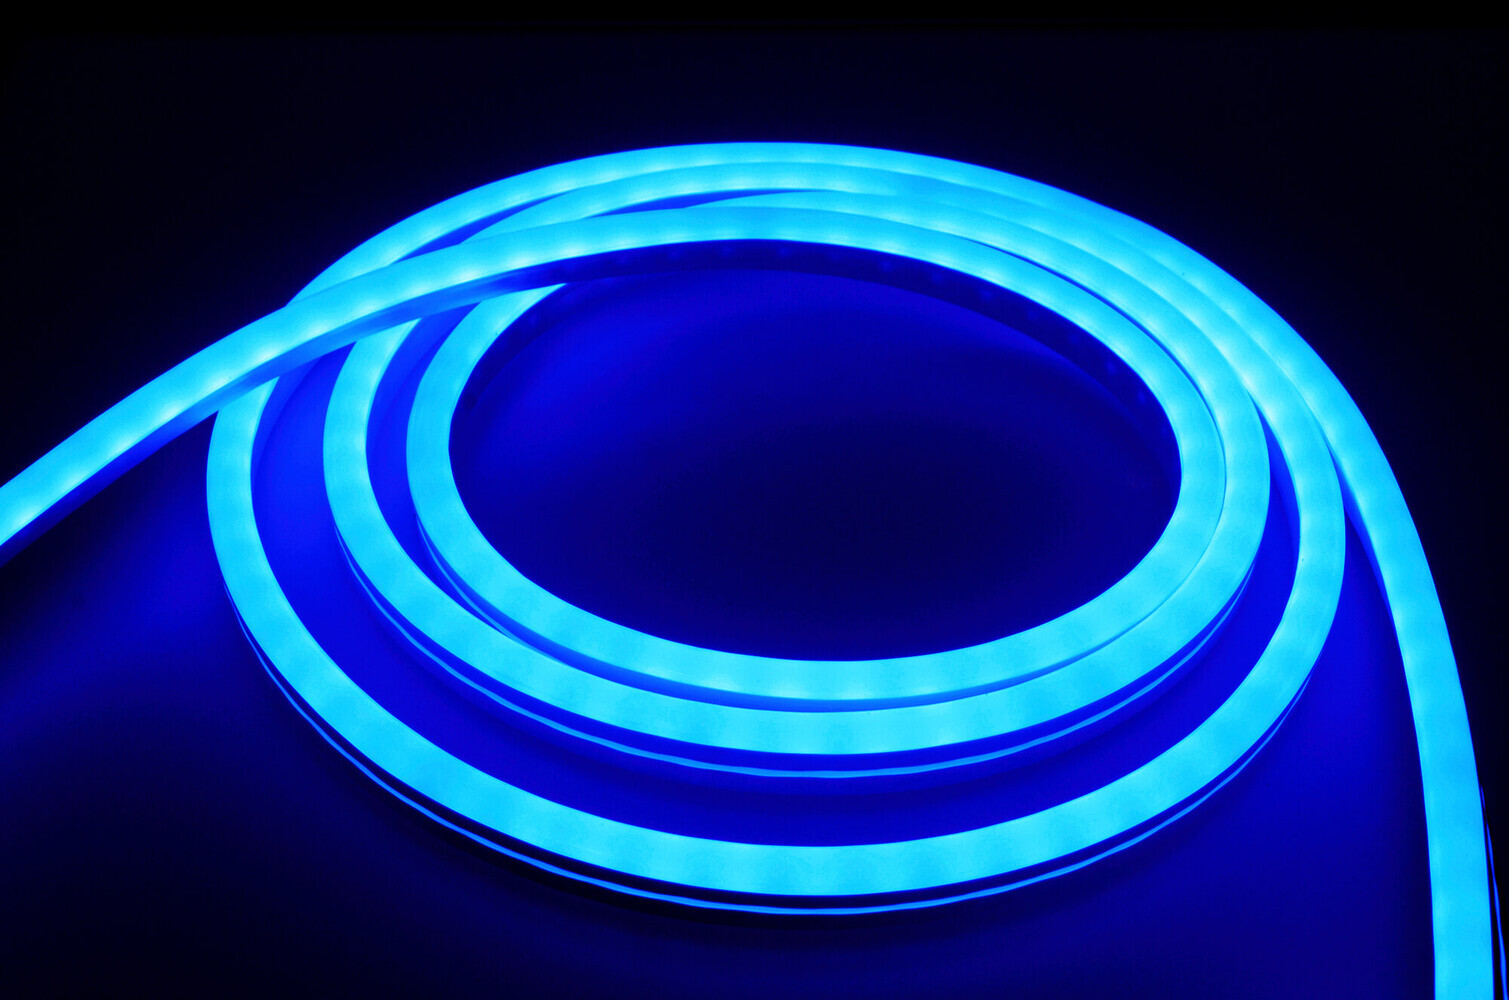 Hochwertiger, professioneller LED-Streifen von LED Universum mit farbenfroher RGB-Funktion, geeignet für Außenbereiche dank IP66-Schutz